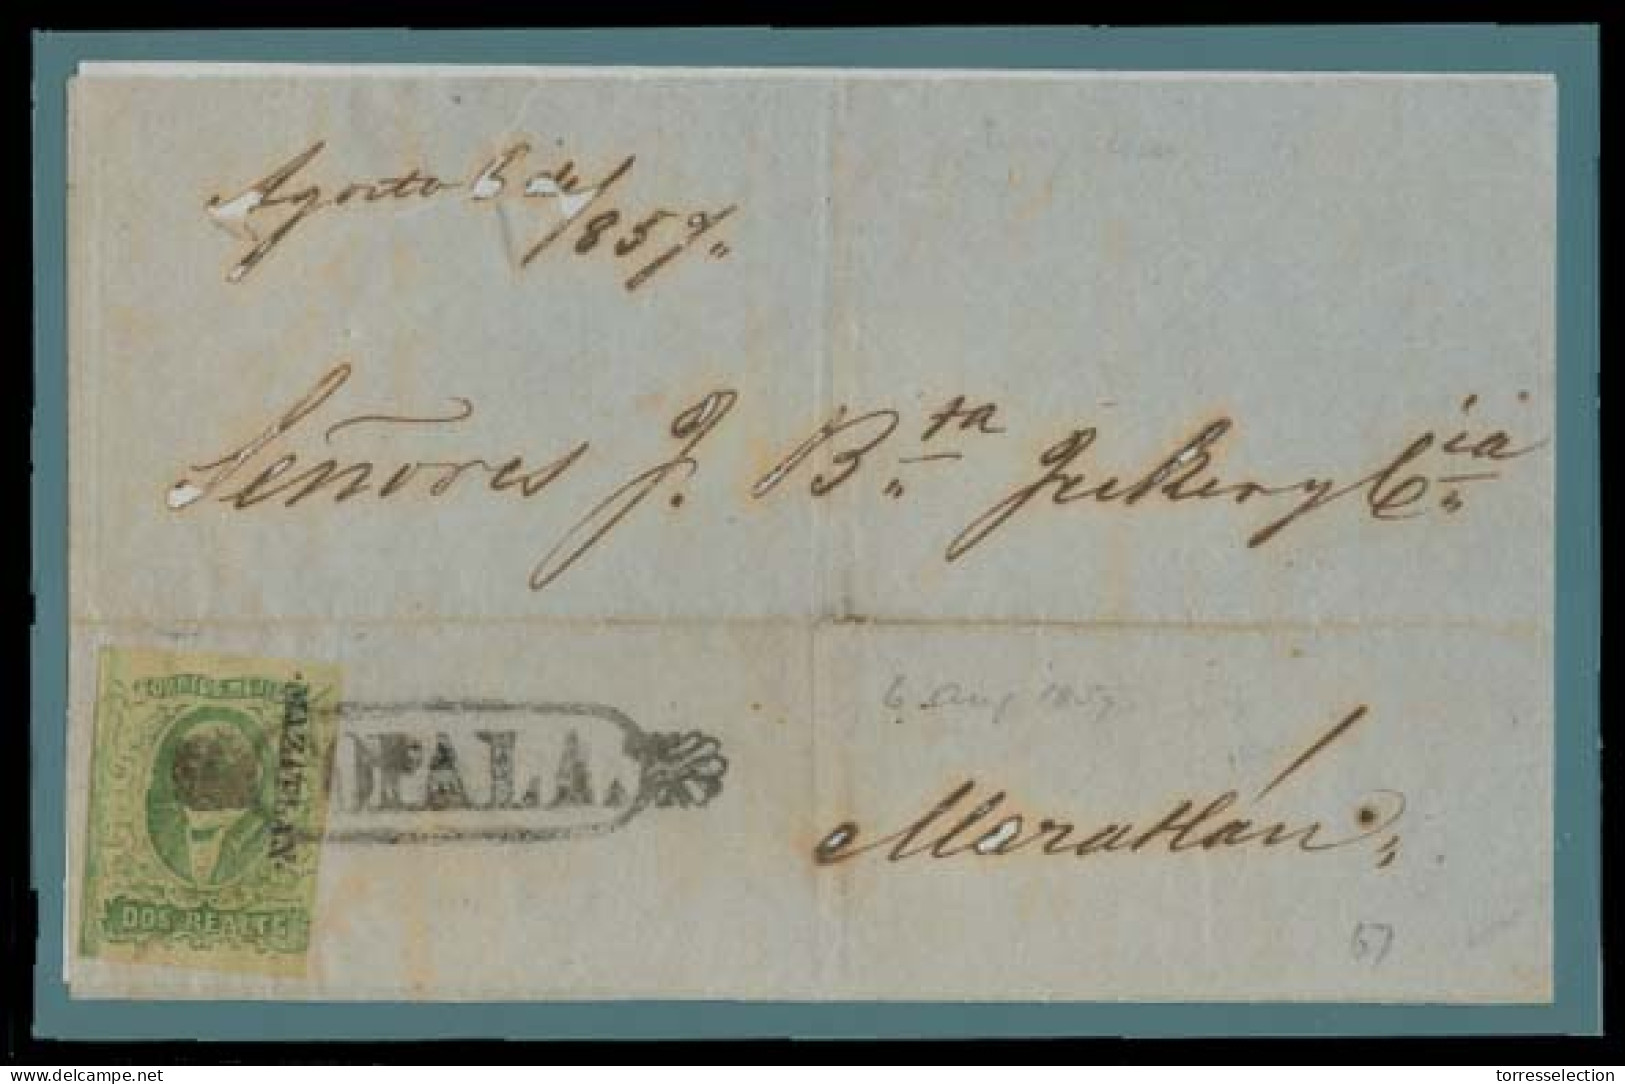 MEXICO. 1857 (6 Ago). Copala - Magatlan. Docketed E Front Bearing 1856 2rs Green - Green, Distric Name, Oval Ornamental  - México